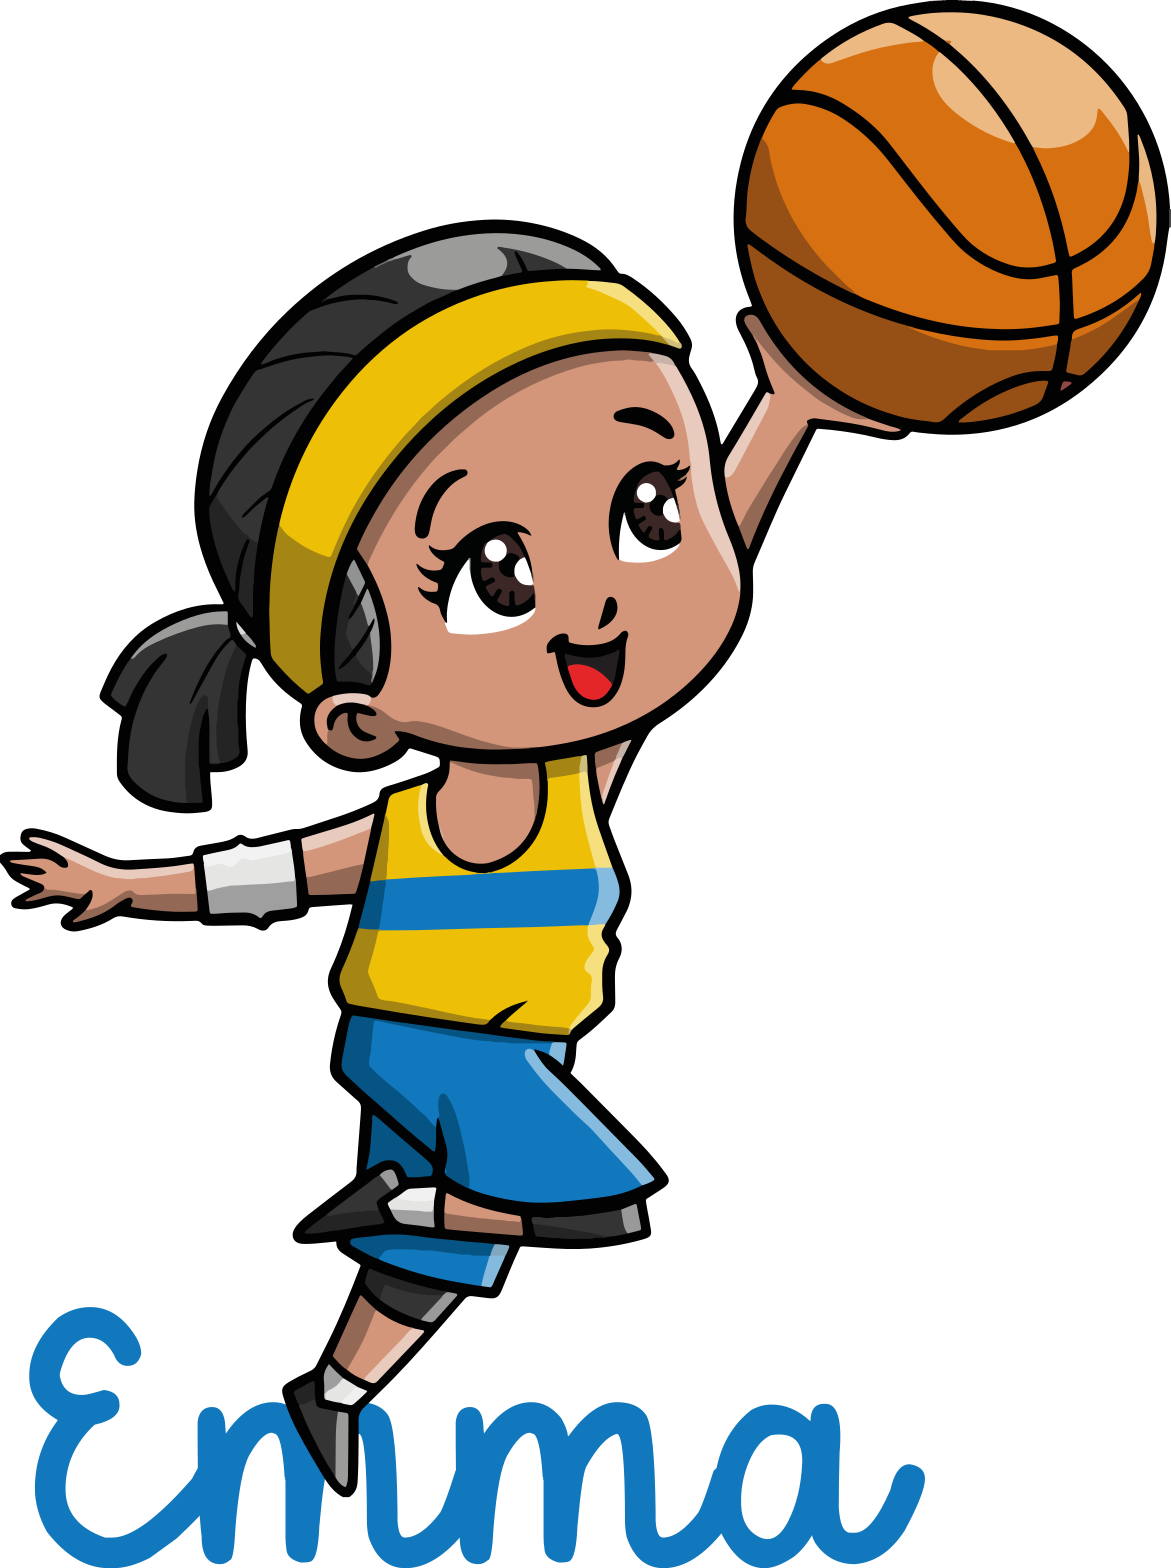 Os benefícios do basquete para crianças - Baby Heróis